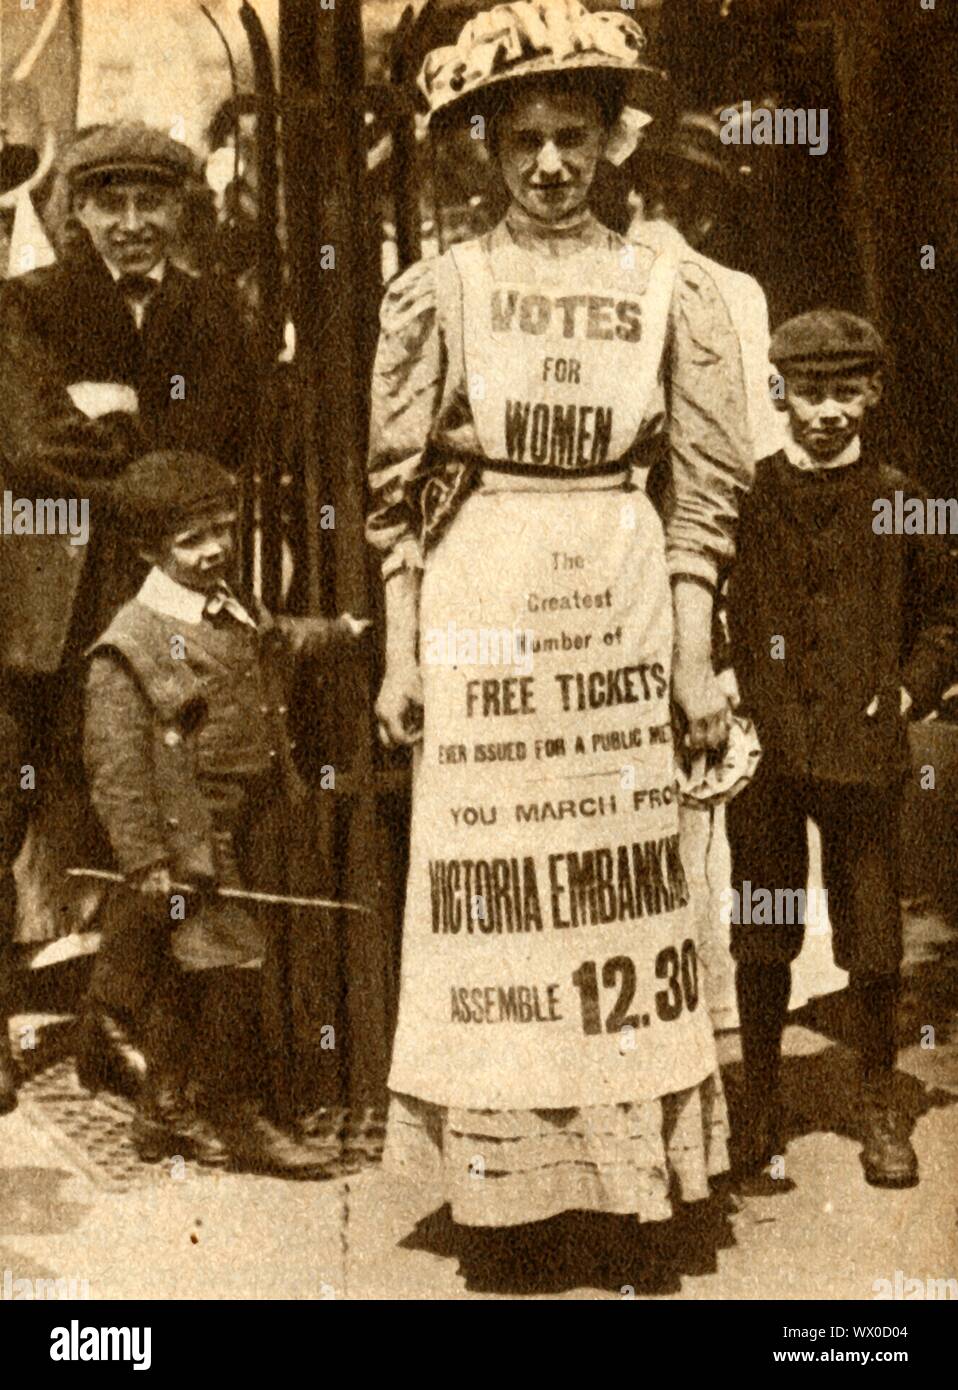 'L'Suffragette cameriera' 1908, (1933). Un suffragette (Vera Wentworth?) indossa una pubblicità pinafore una protesta a London Victoria Embankment. La campagna per fissare la votazione per le donne in Gran Bretagna ha visto le donne che adotta una serie di proteste, azione diretta e di disobbedienza civile, per il quale molti furono imprigionati. Suffragio parziale è stato raggiunto nel 1918 con tutte le donne infine ottenere il diritto di voto di dieci anni più tardi, nel 1928. Da "il corteo del secolo". [Odhams Press Ltd, 1933] Foto Stock